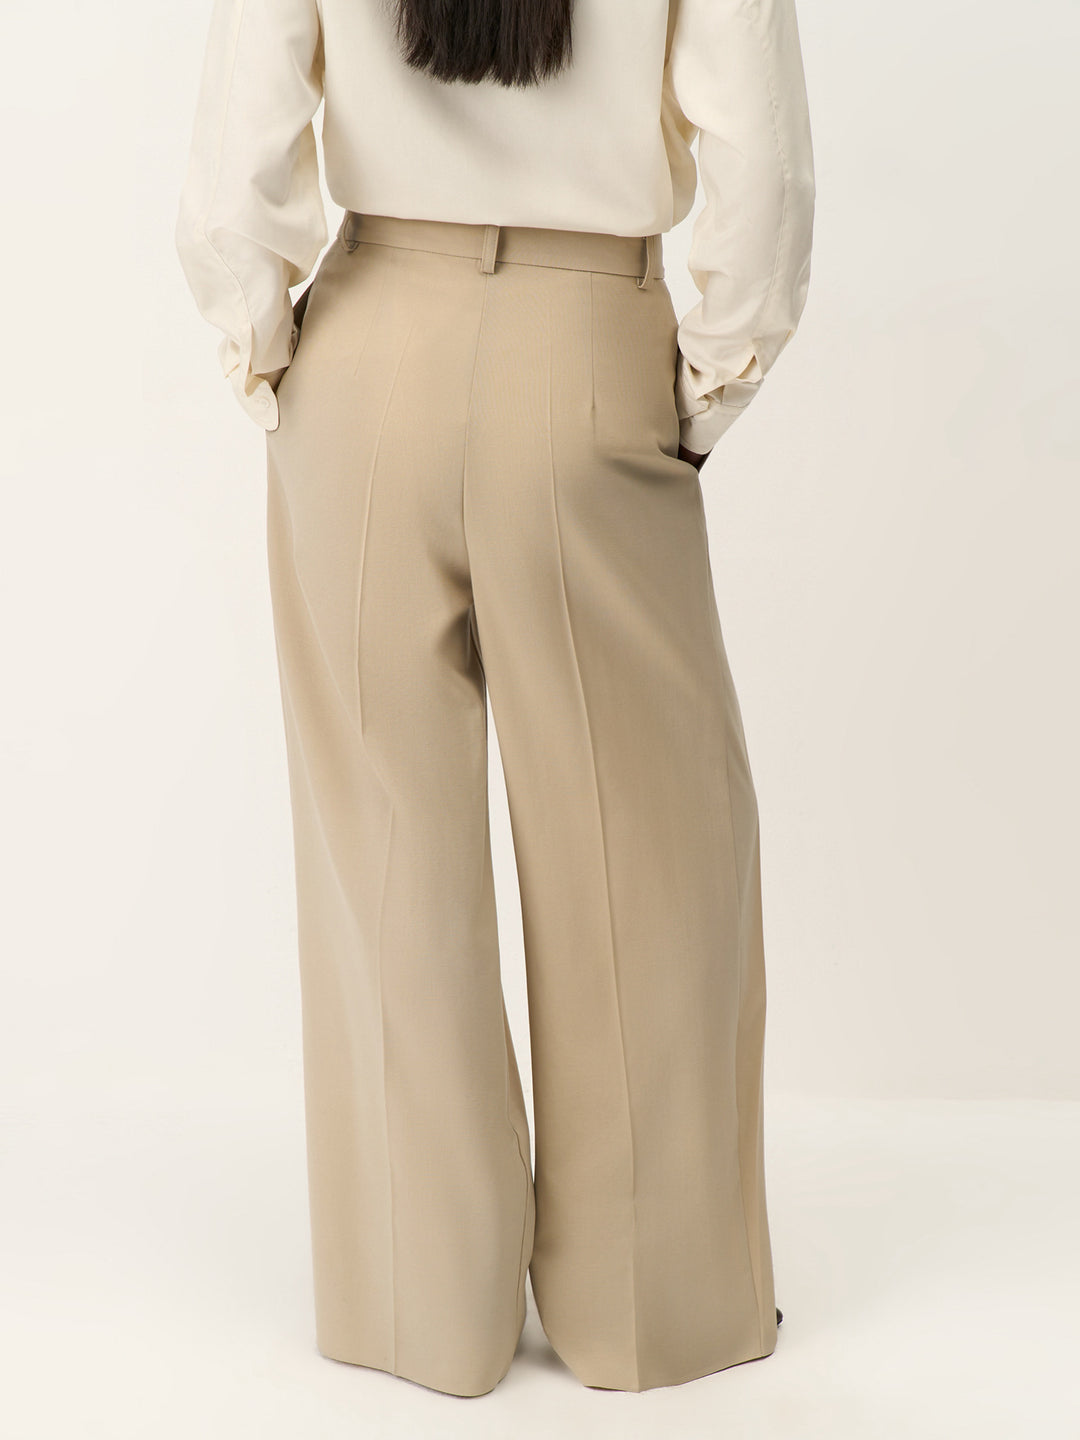 Catwalk wool pants (beige)